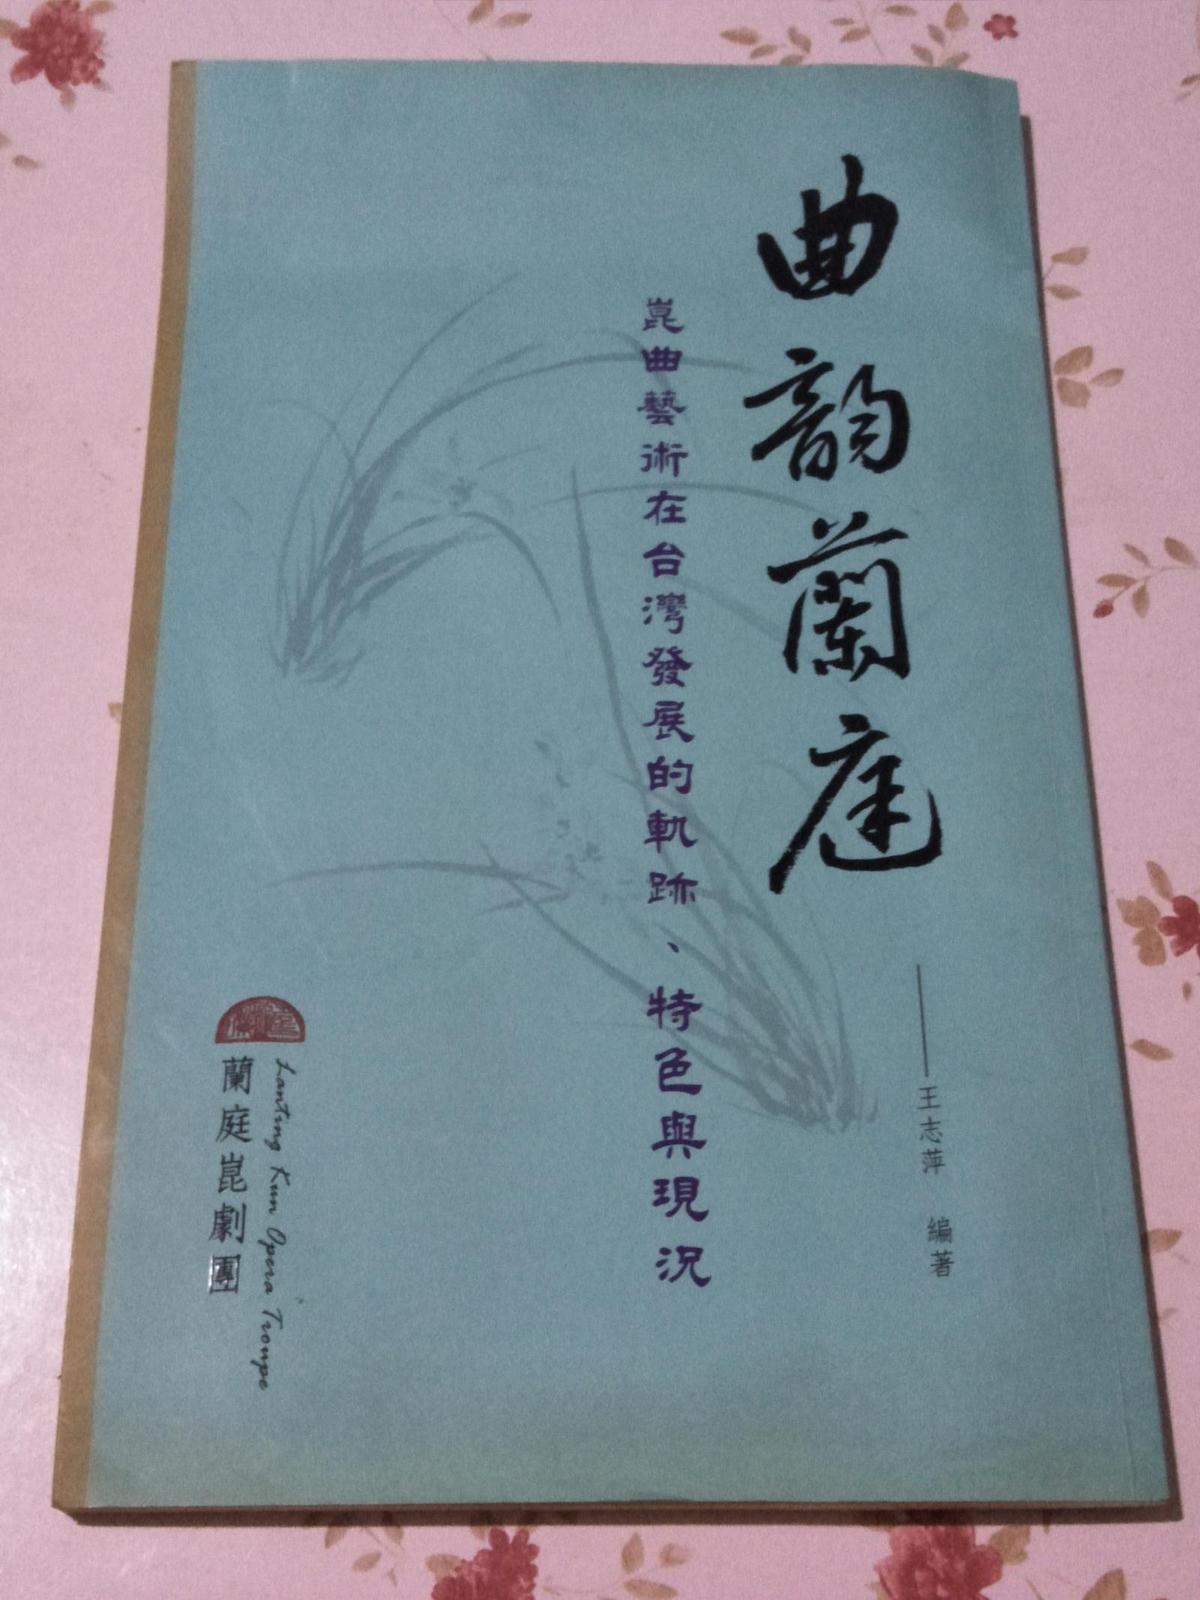 曲韵兰庭=昆曲艺术在台湾发展的轨迹、特色与现况  有作者王志萍签名